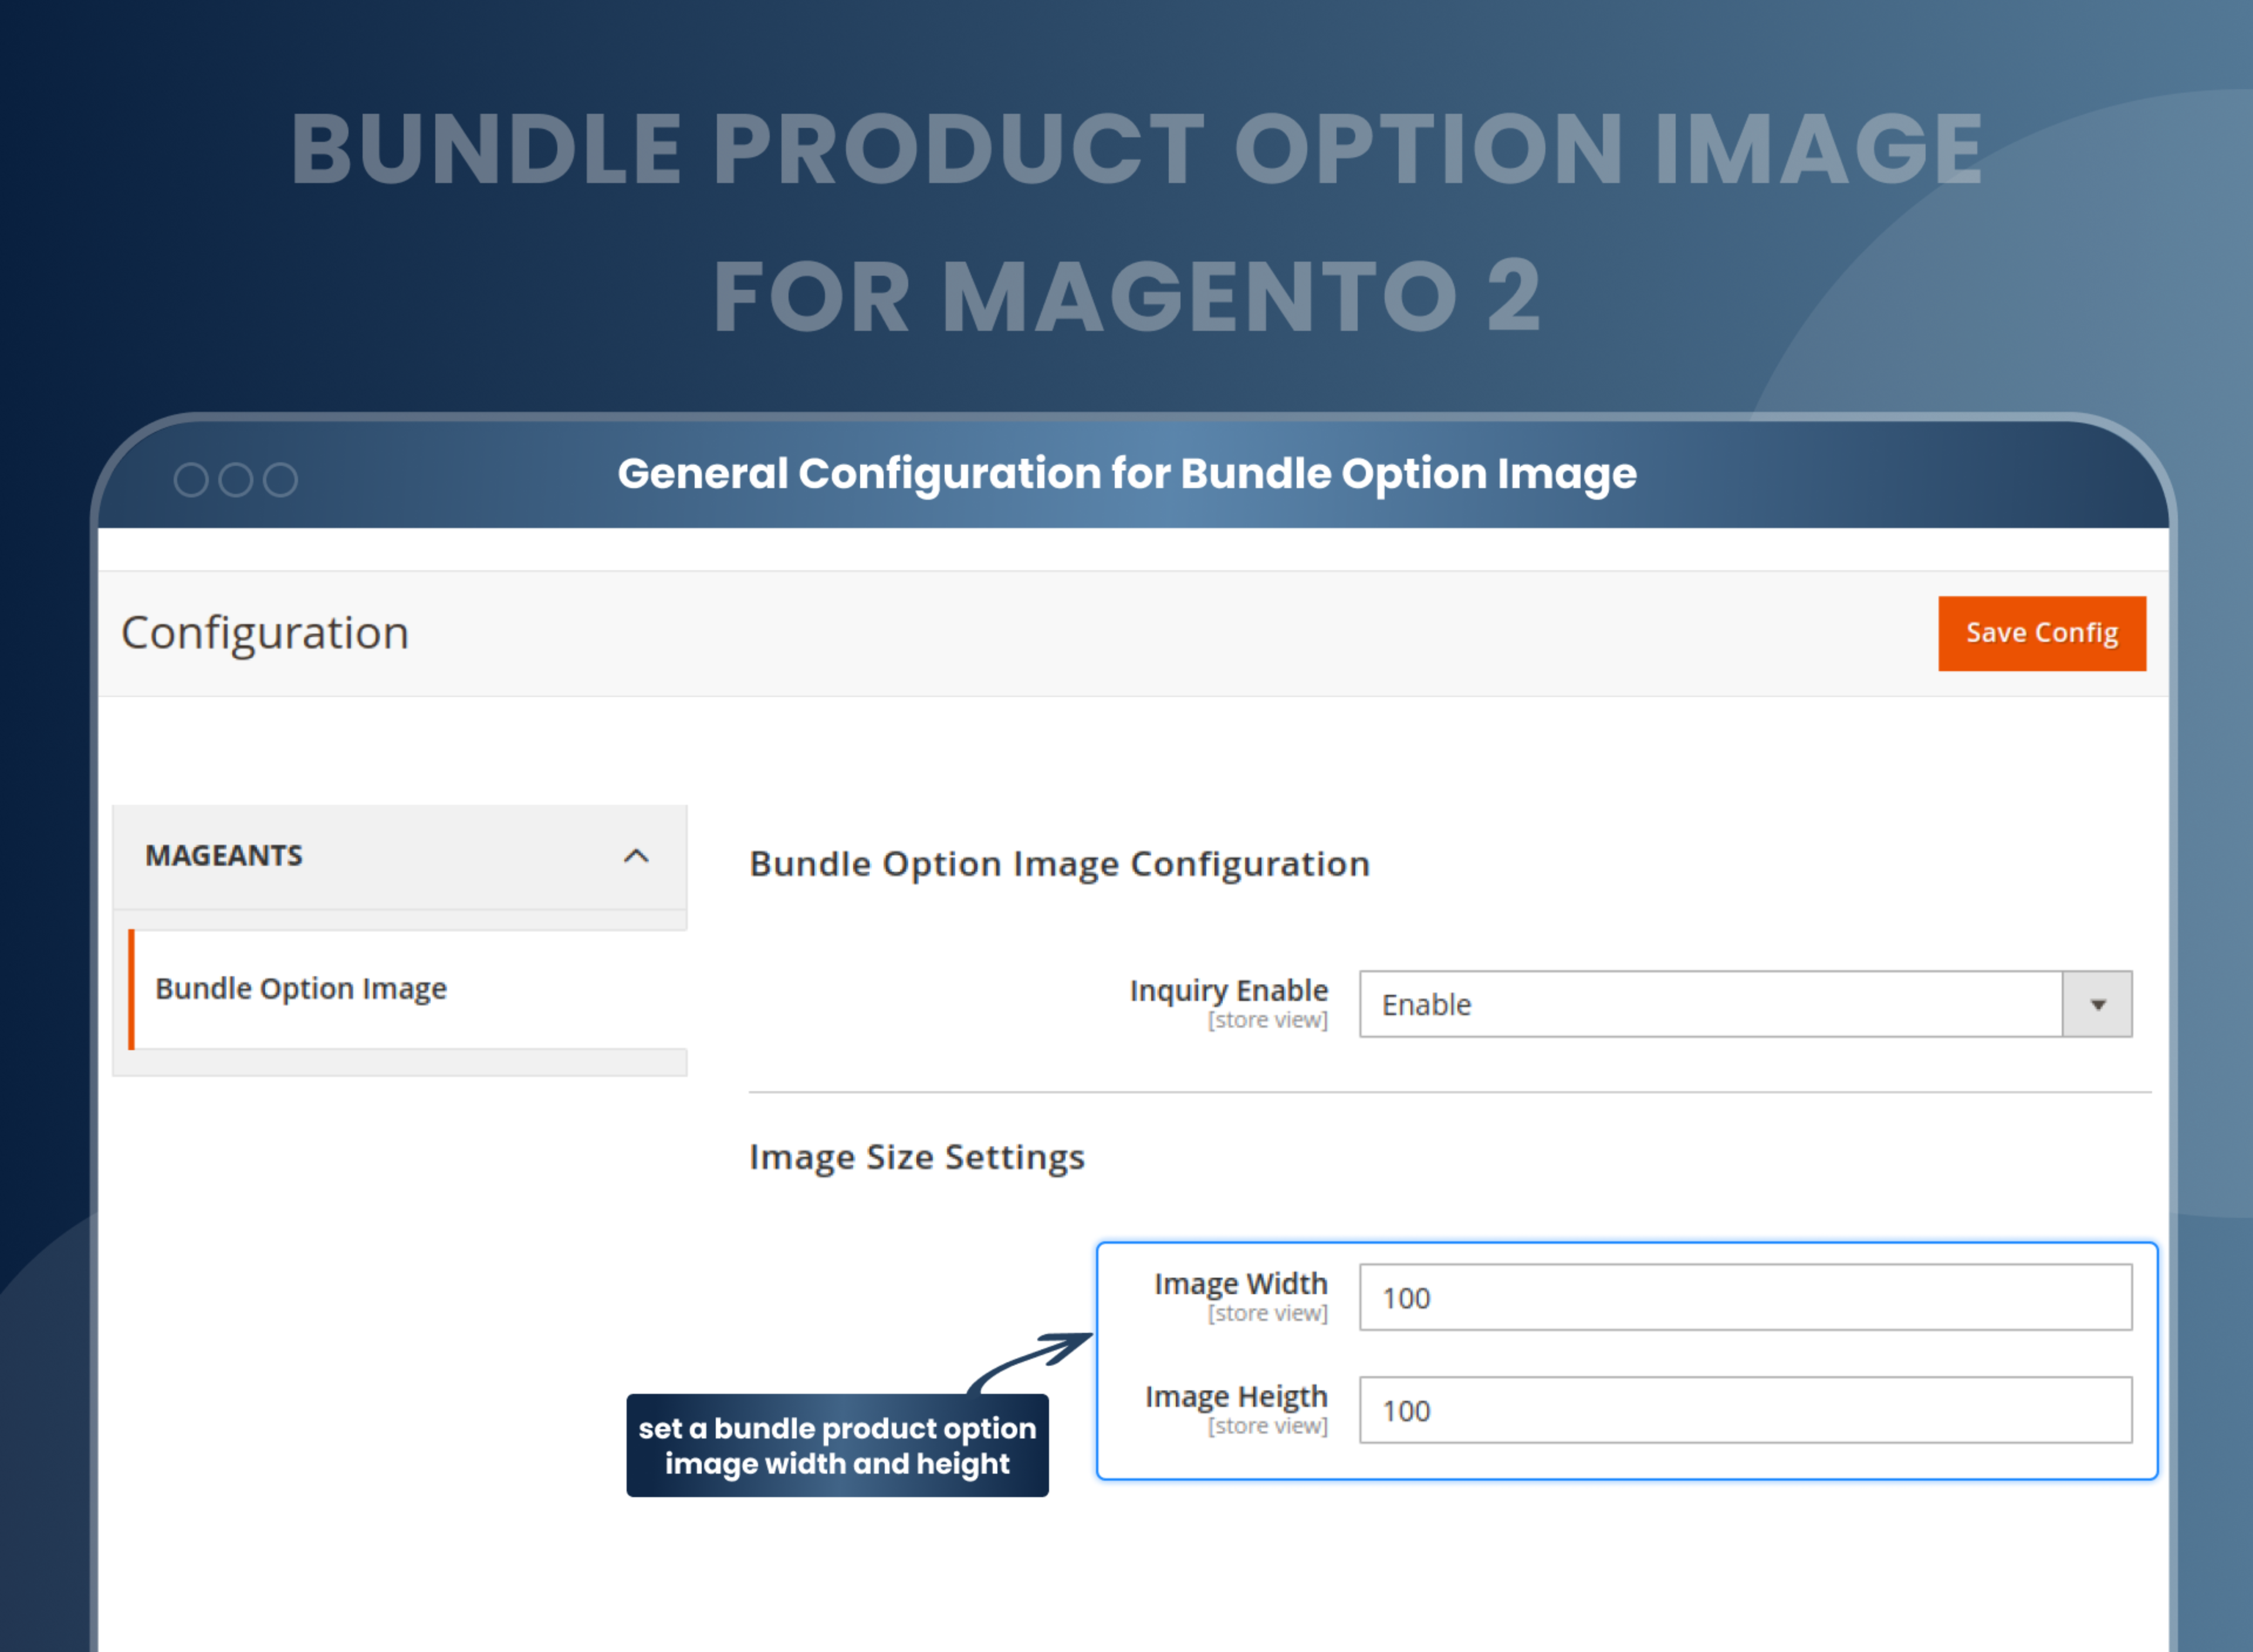 General Configuration for Bundle Option Image